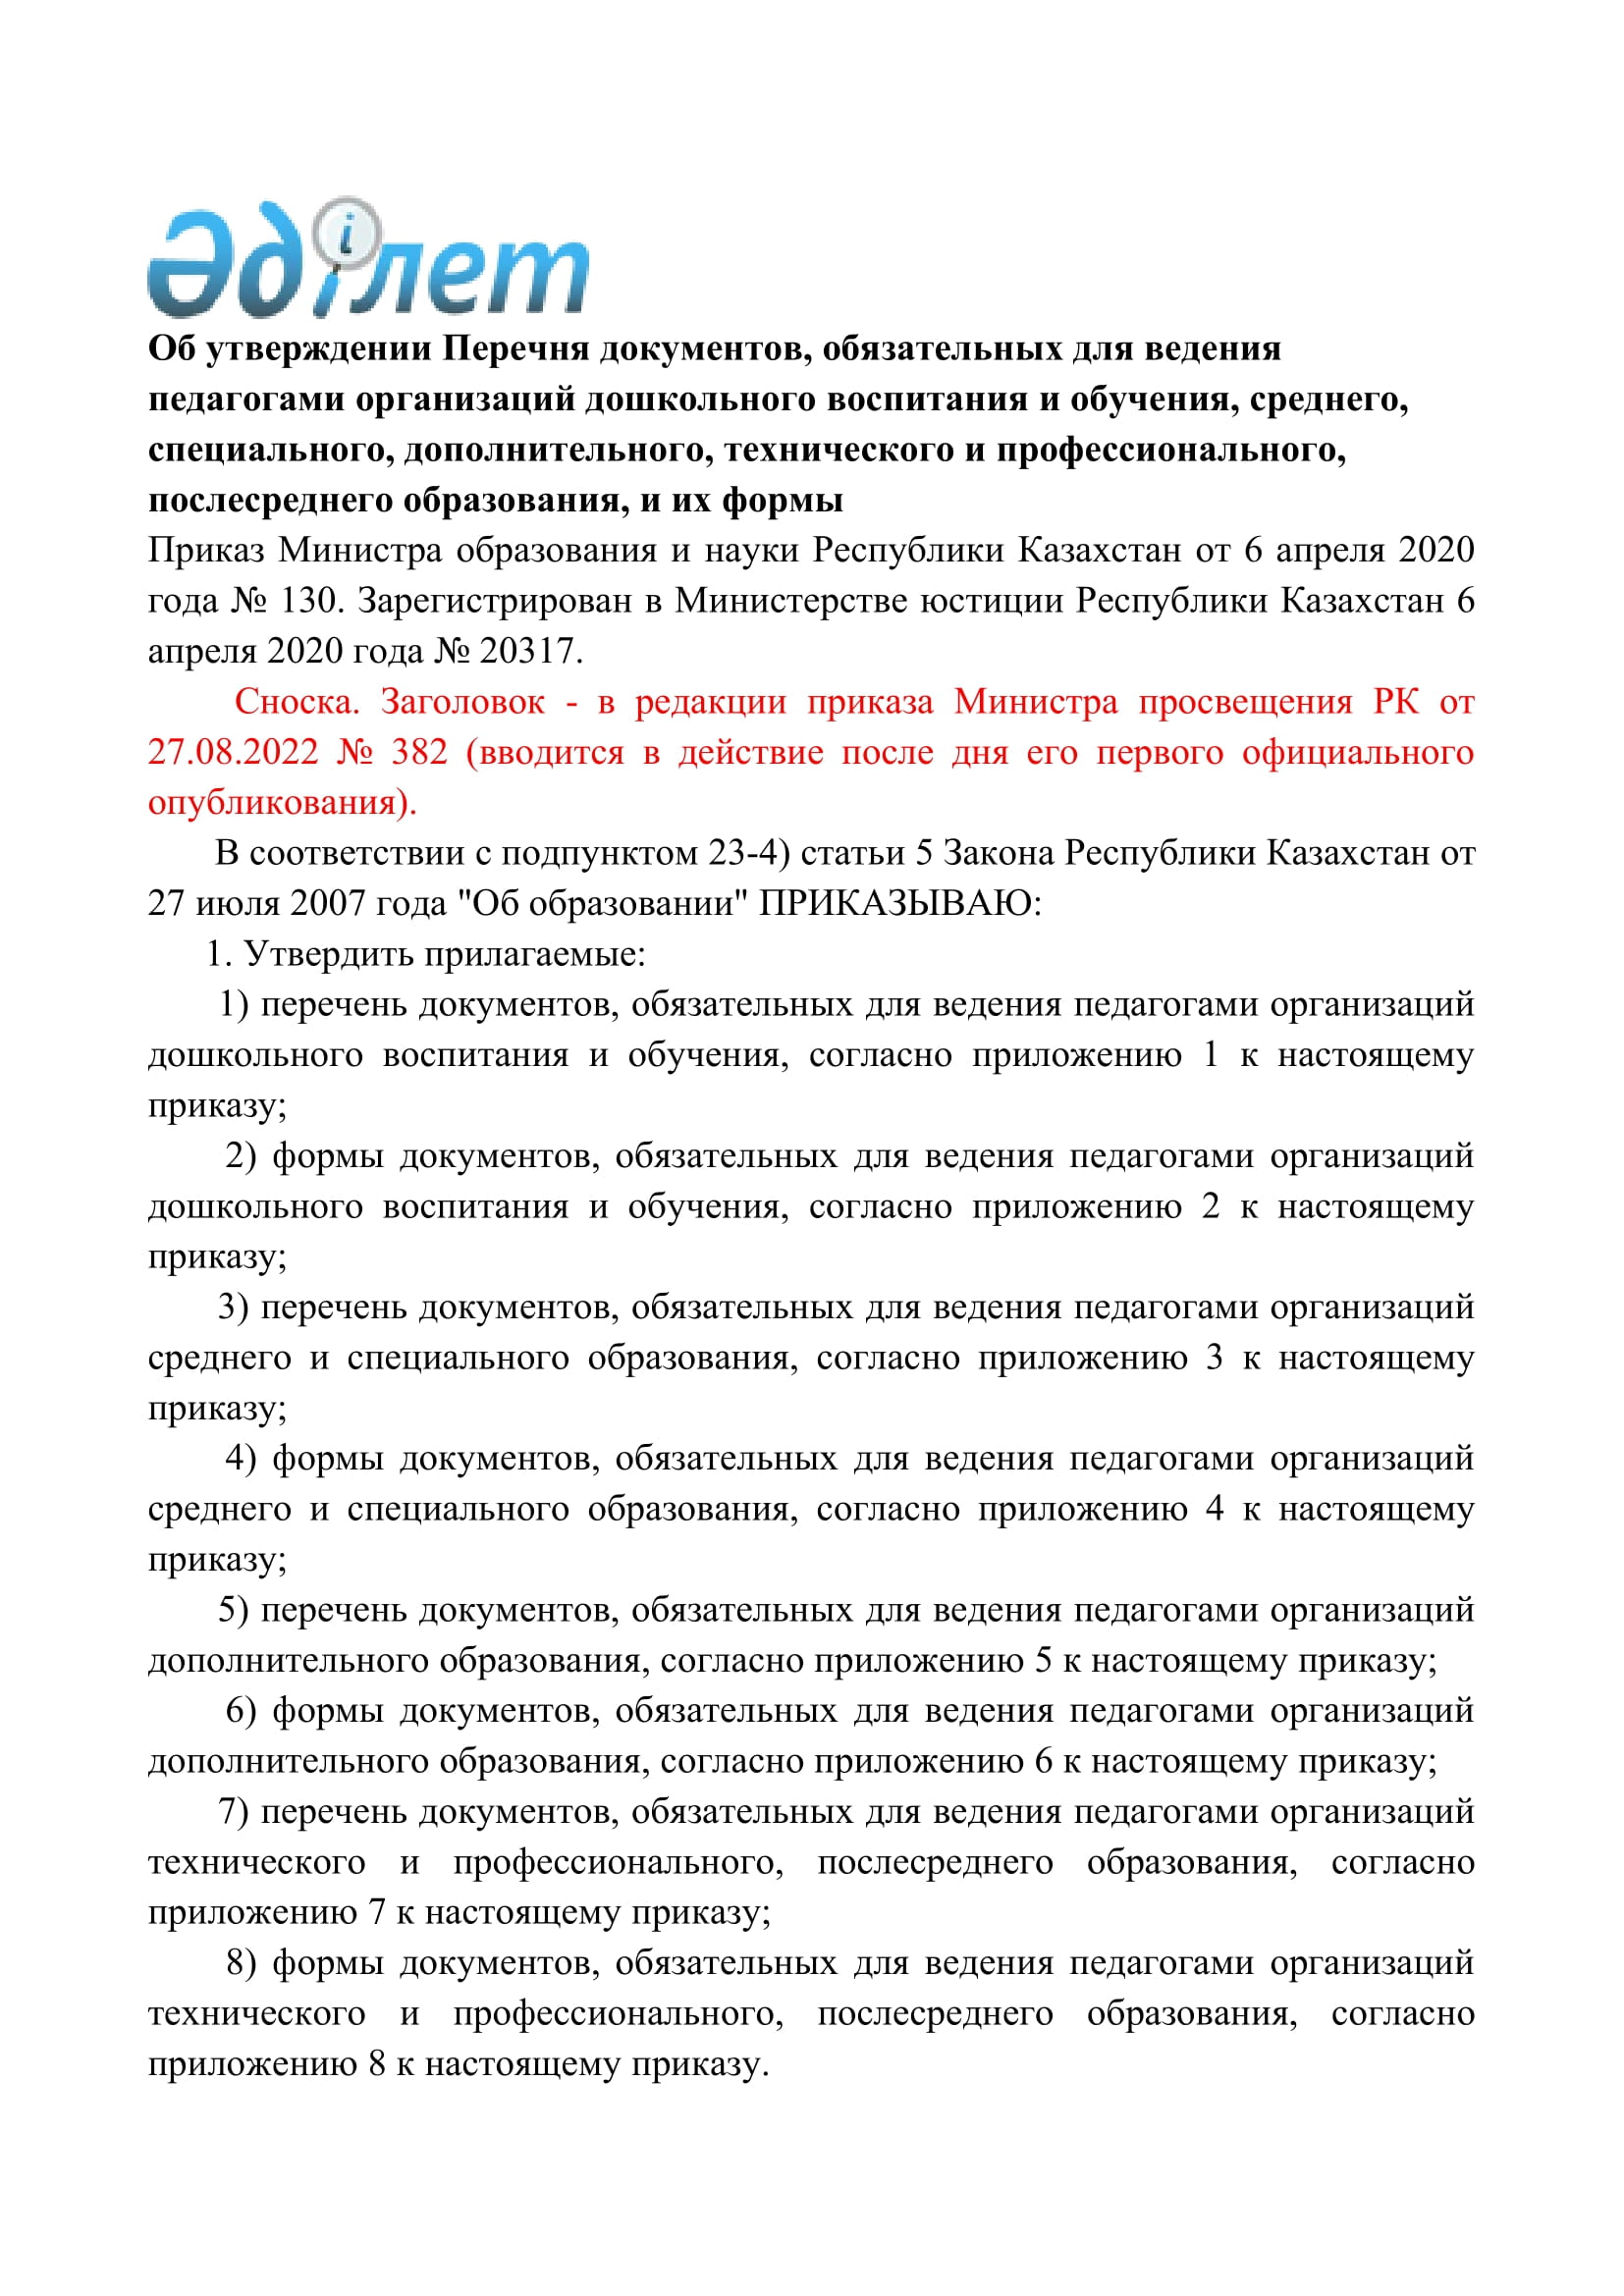 Приказ Министра образования и науки Республики Казахстан от 6 апреля 2020 года № 130. Зарегистрирован в Министерстве юстиции Республики Казахстан 6 ап